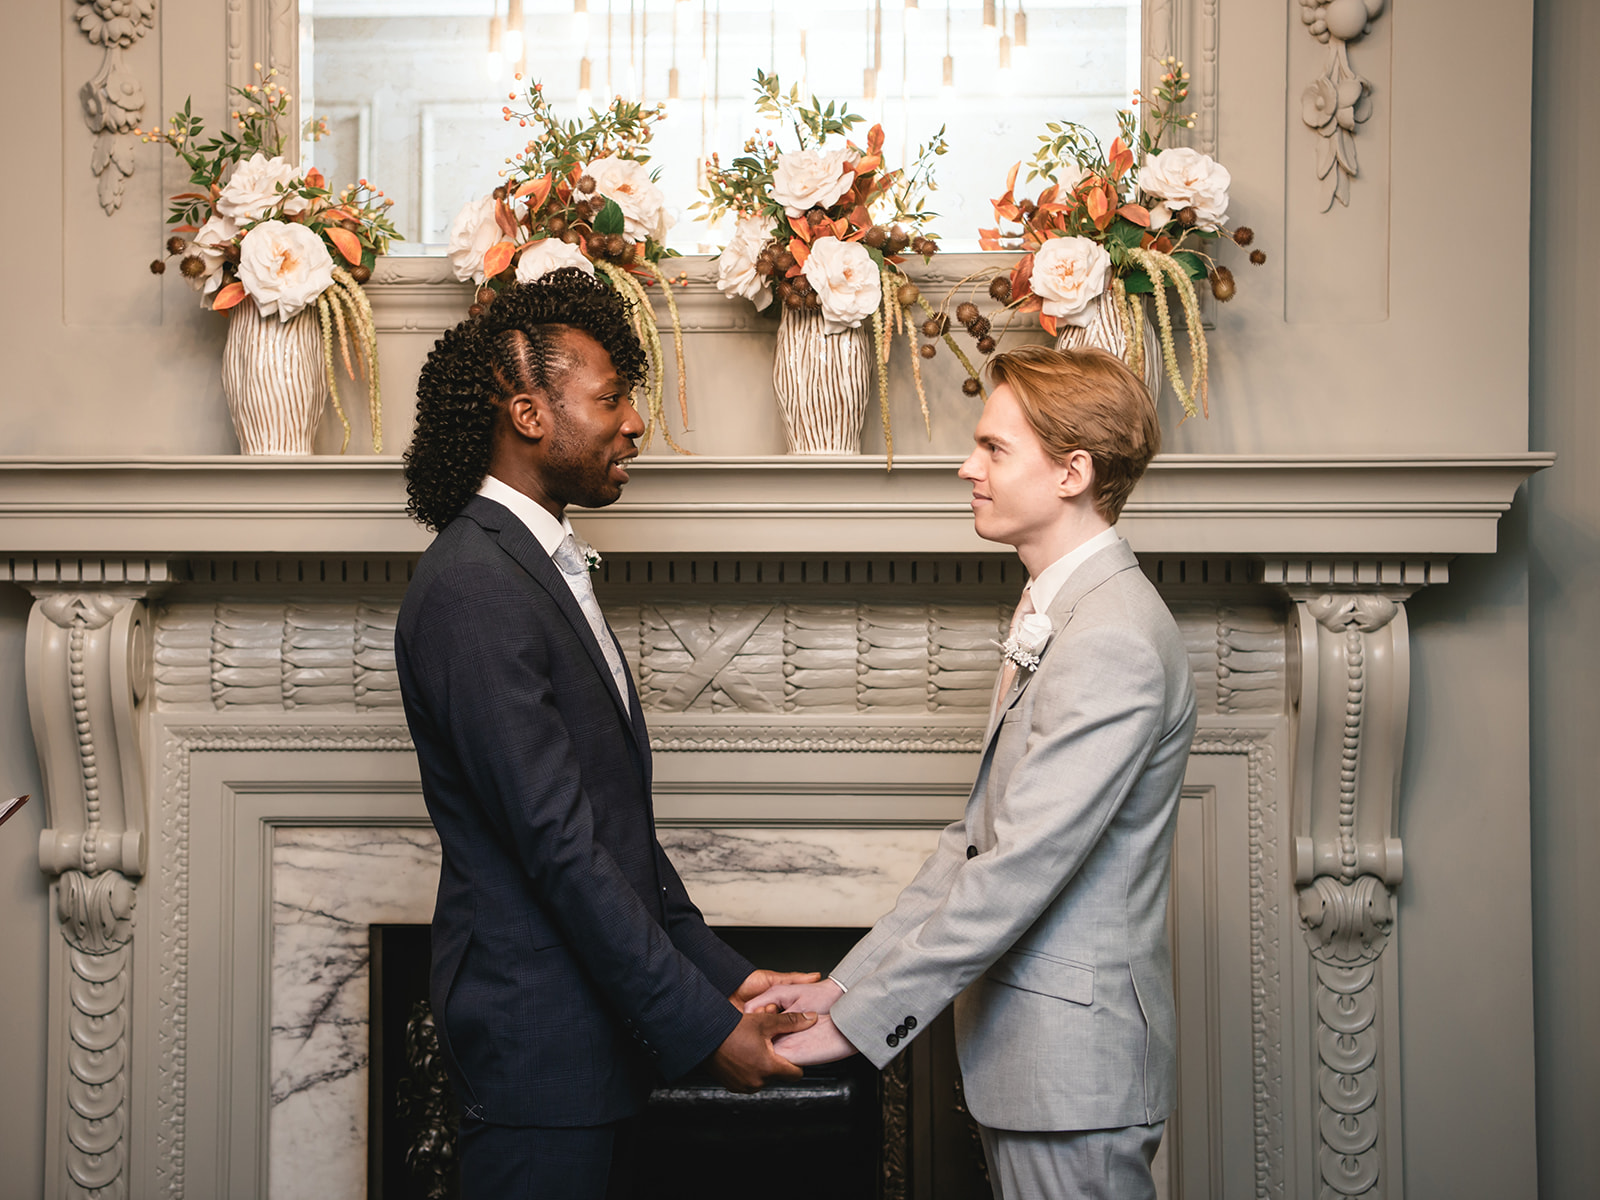 Benjamin and Ezekiel's wedding ceremony in the Soho Room at Marylebone Town Hall